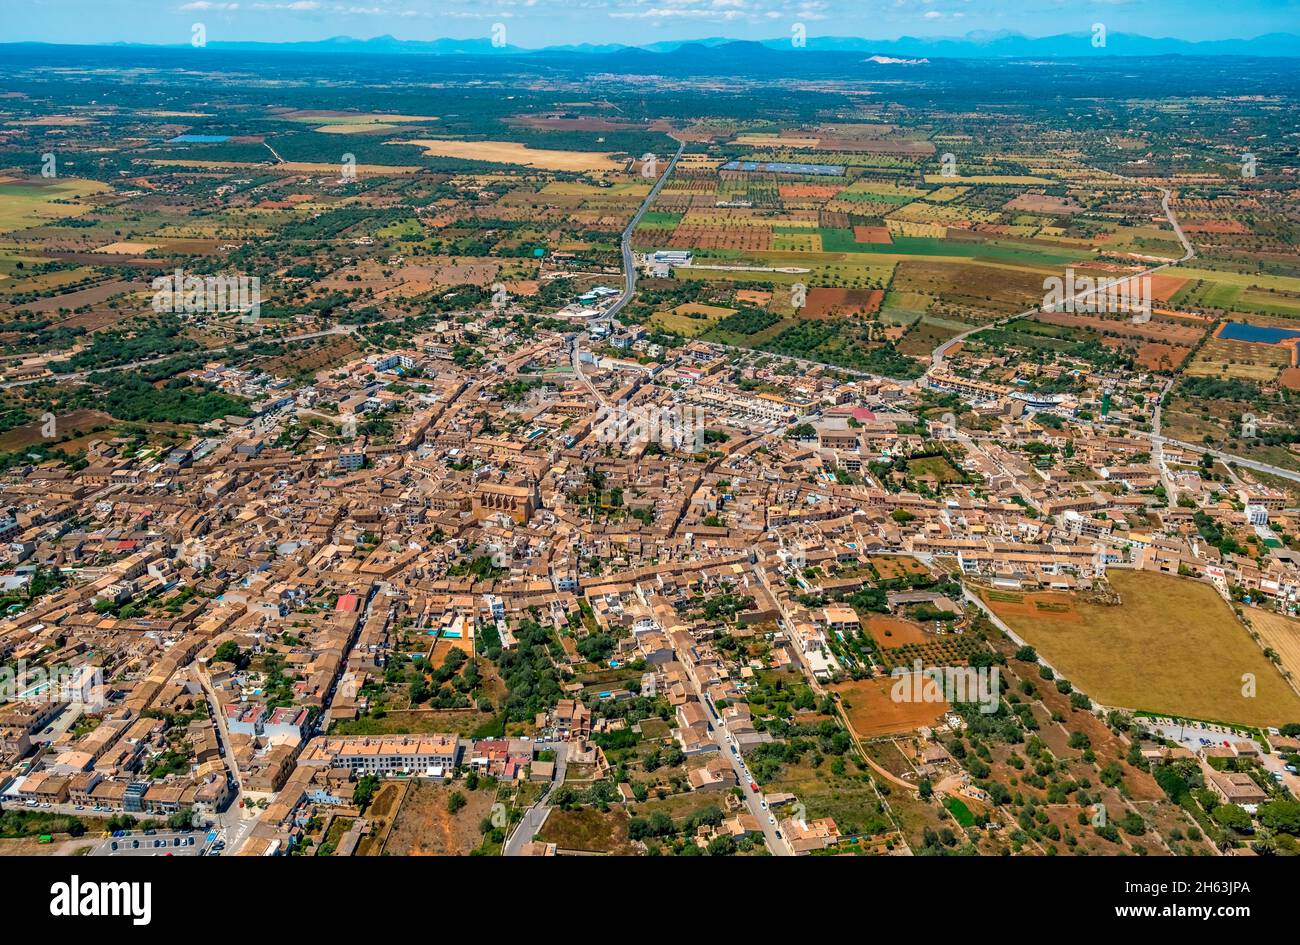 vue aérienne, vue sur la ville de santanyí avec une vue intérieure, santanyí, iles baléares, majorque, espagne Banque D'Images